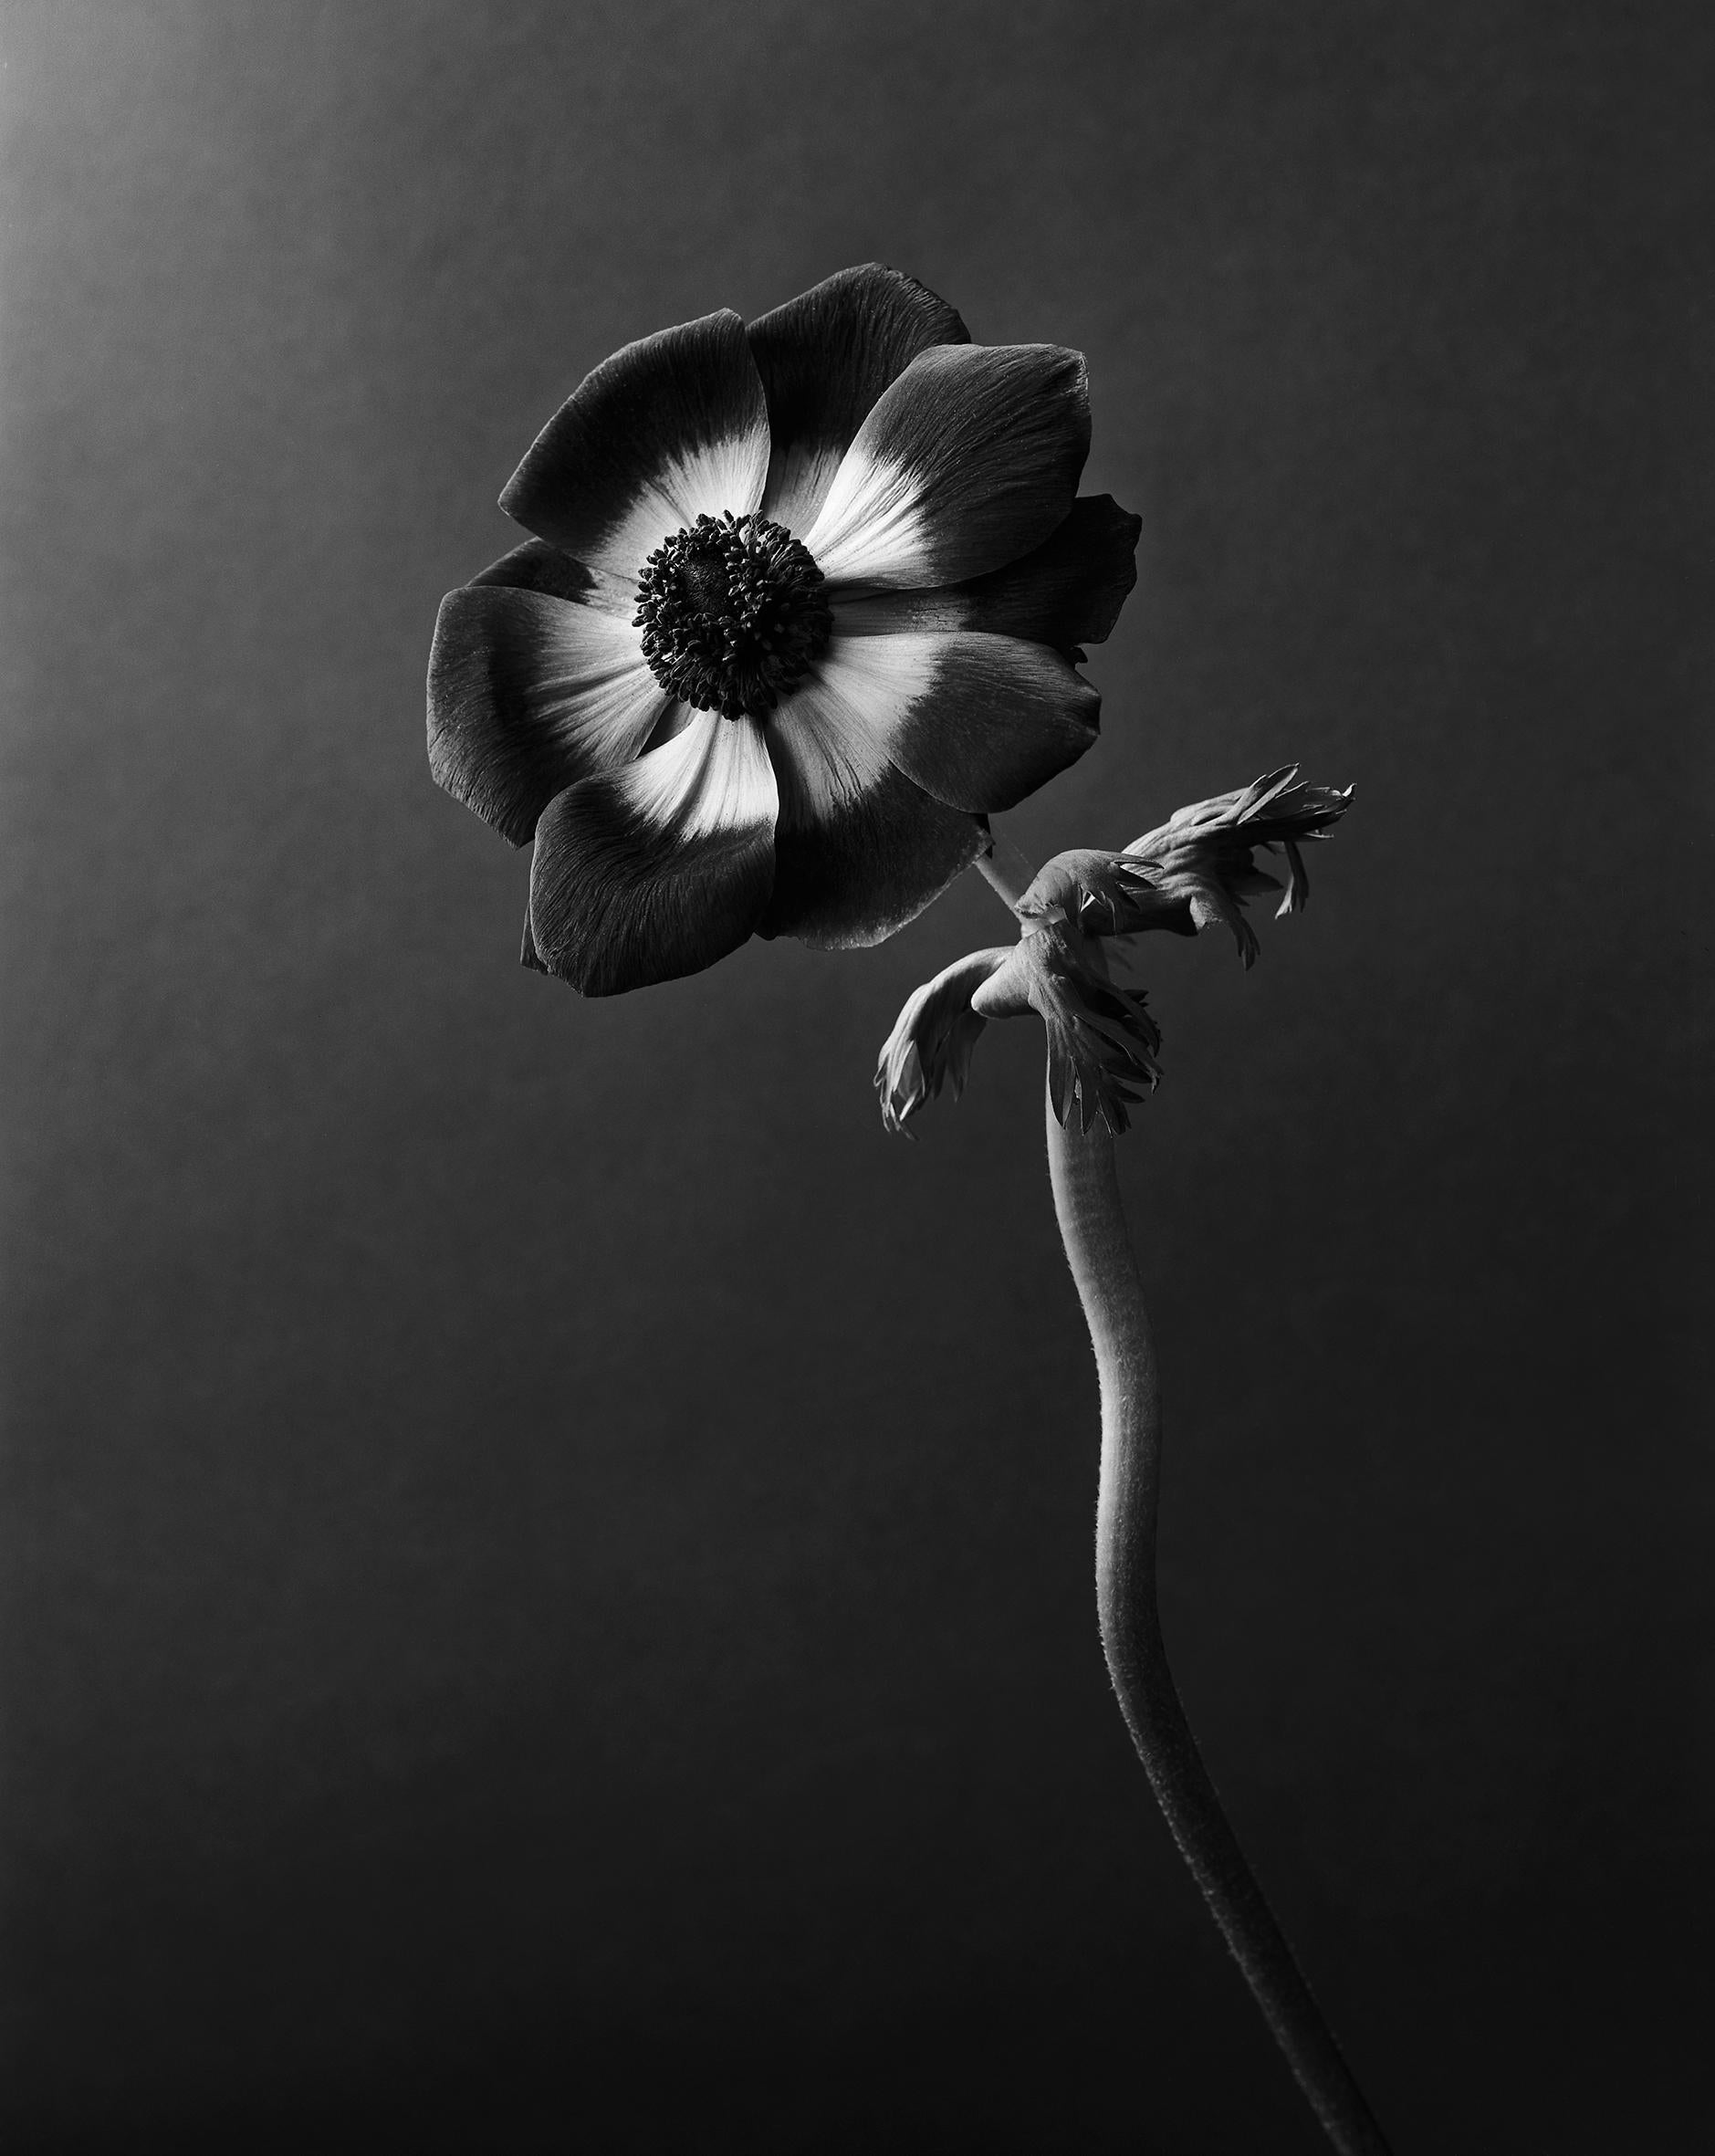 Ugne Pouwell Black and White Photograph –  Anemone – Analogue Schwarz-Weiß-Blumenfotografie, Auflage von 20 Stück